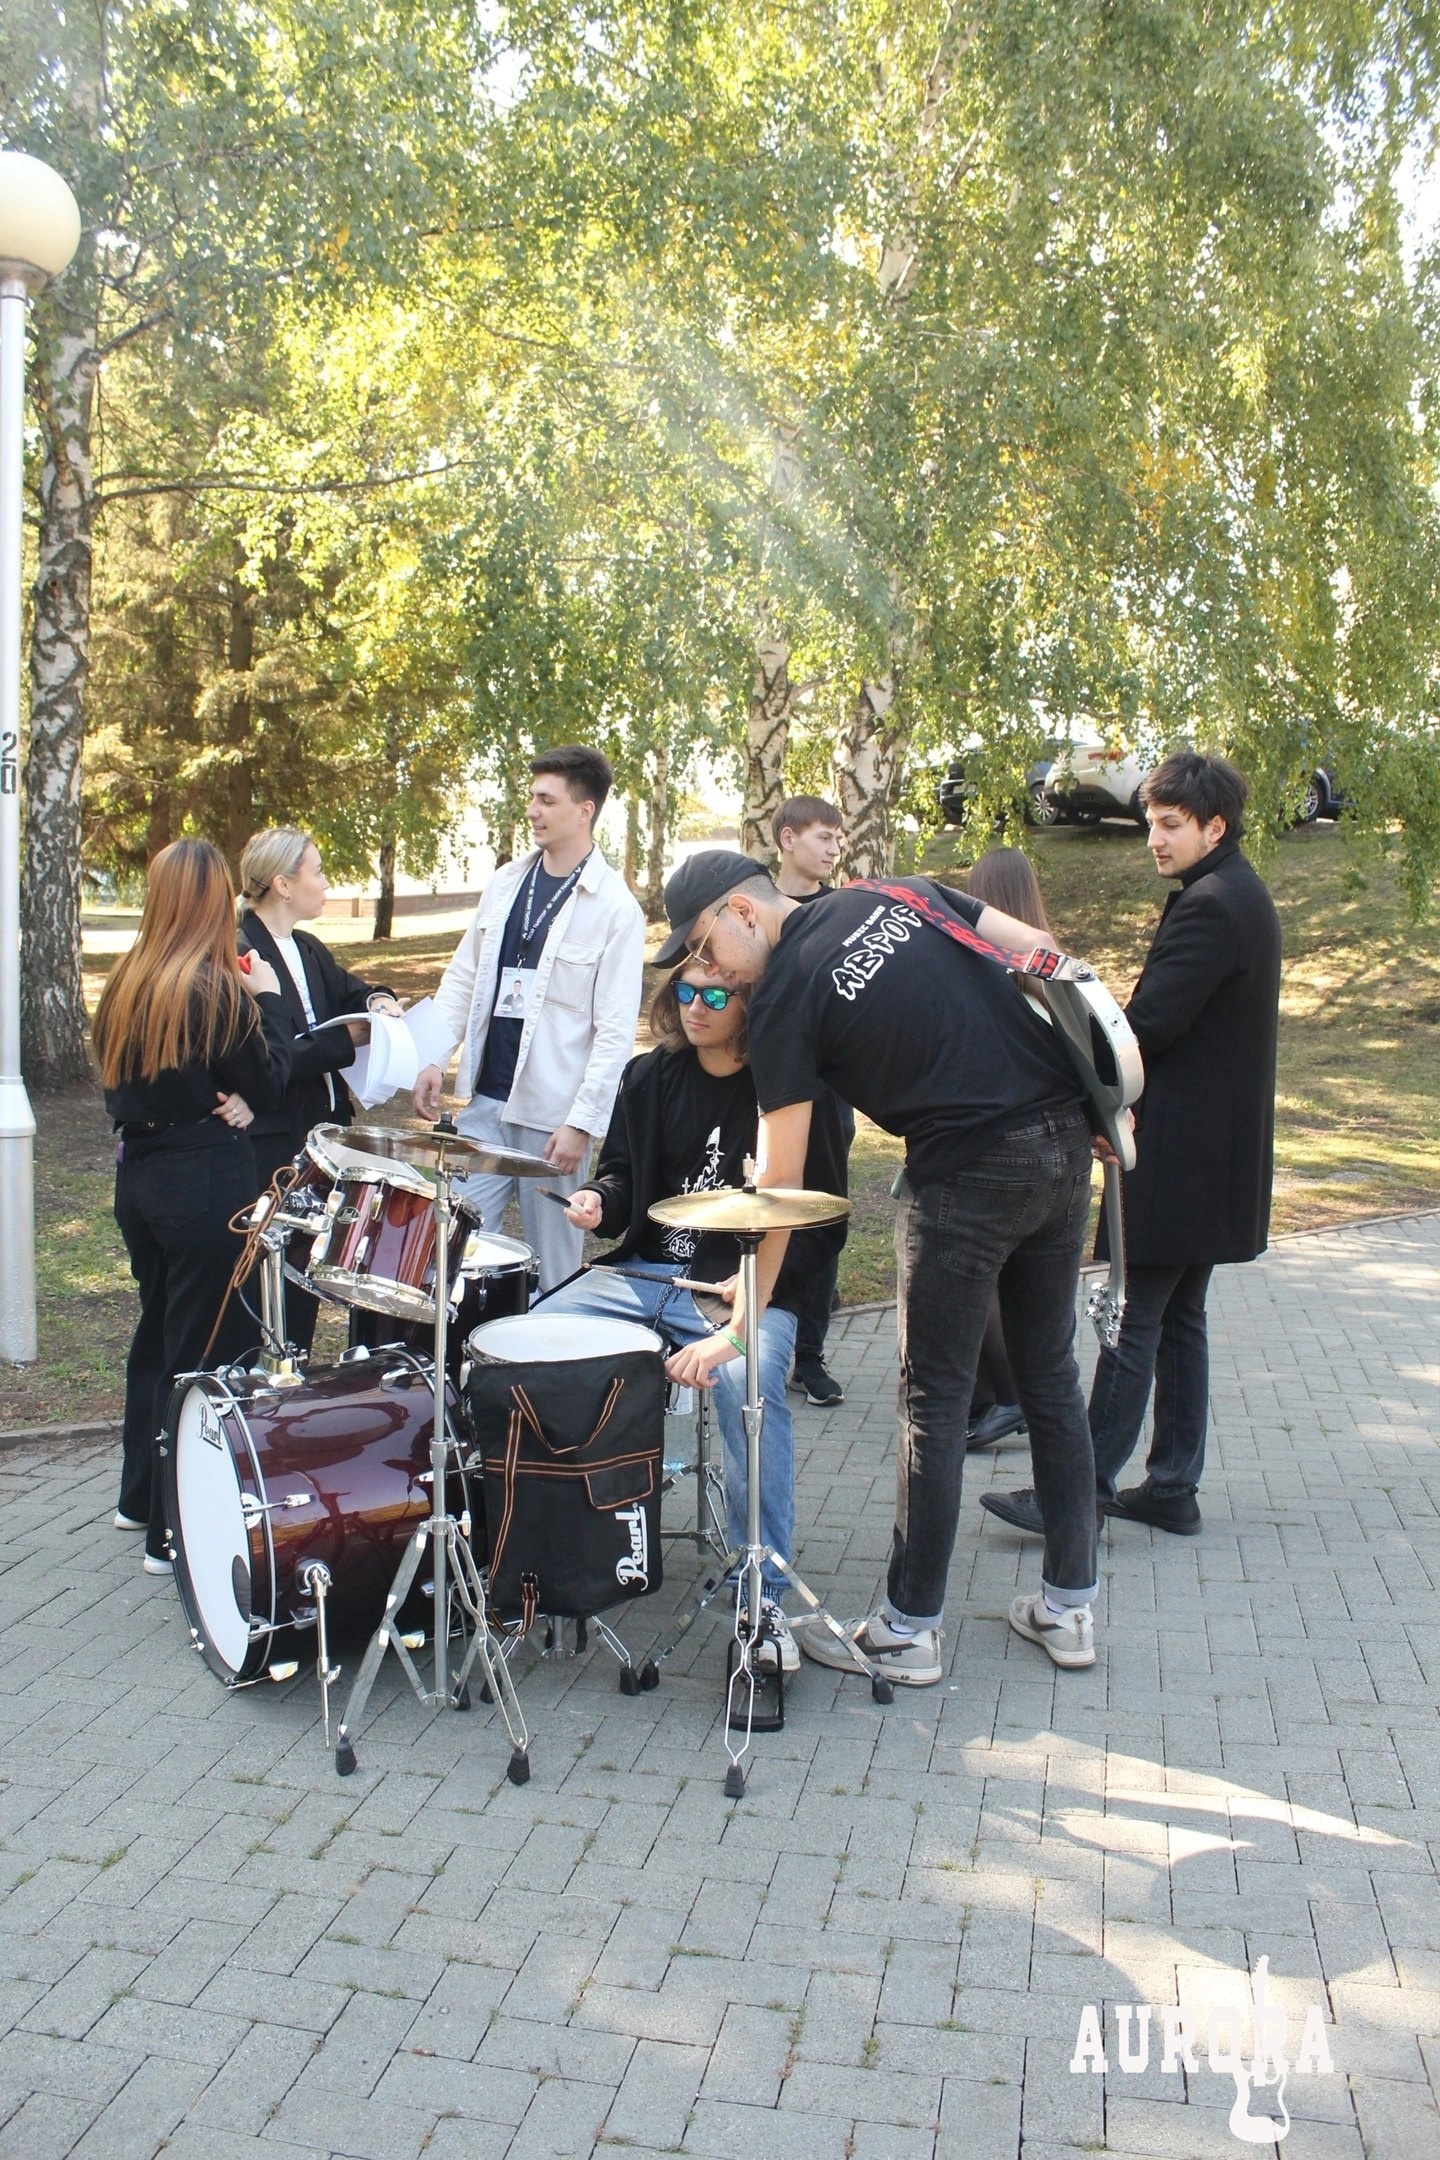 Музыкальная группа "АВРОРА" являлась одной из станций ежегодного квеста для первокурсников Института истории и государственного управления